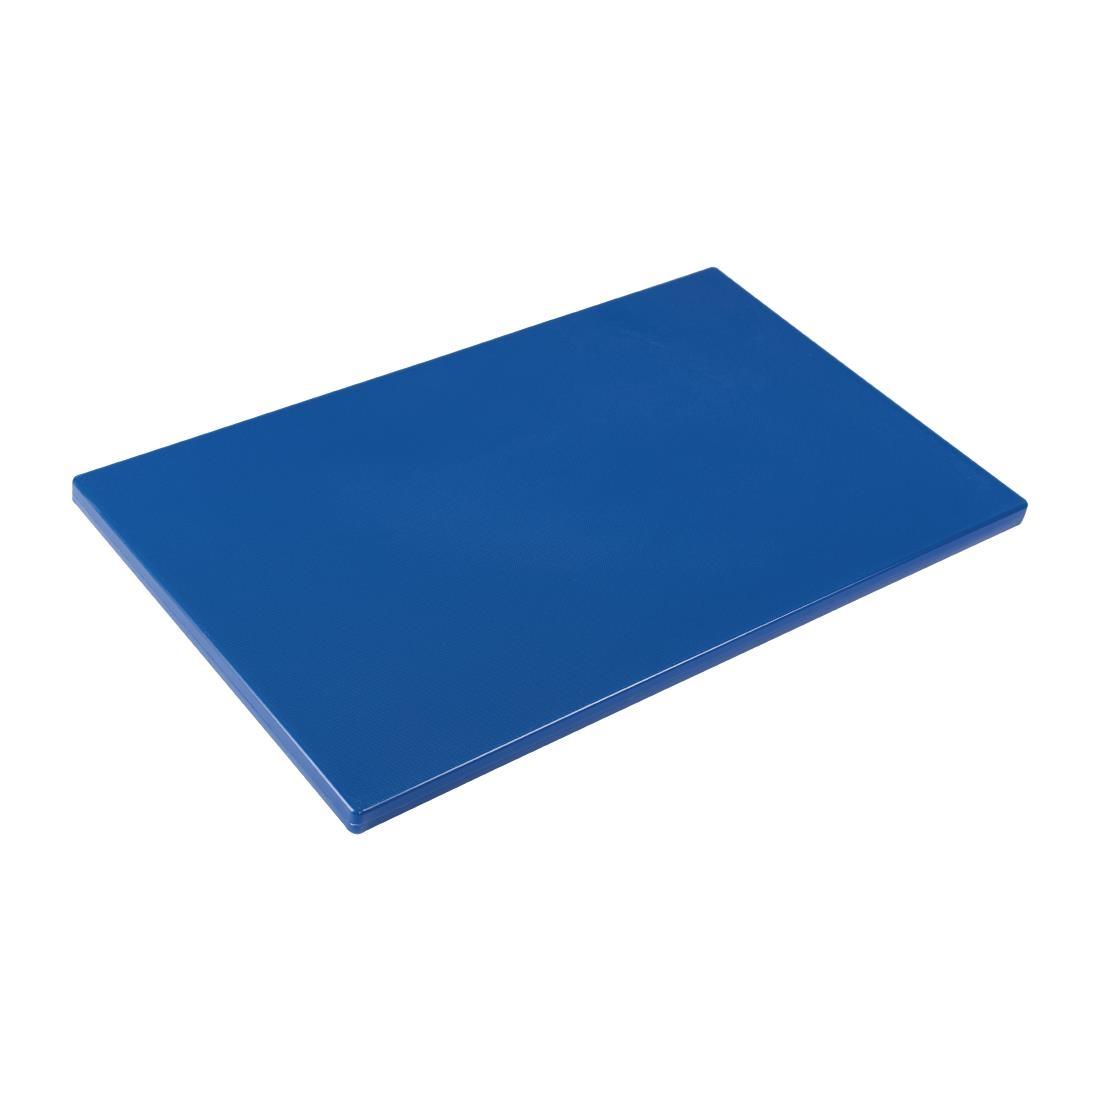 Hygiplas Gastronorm 1/1 Blue Chopping Board- Each - GL285 - 1